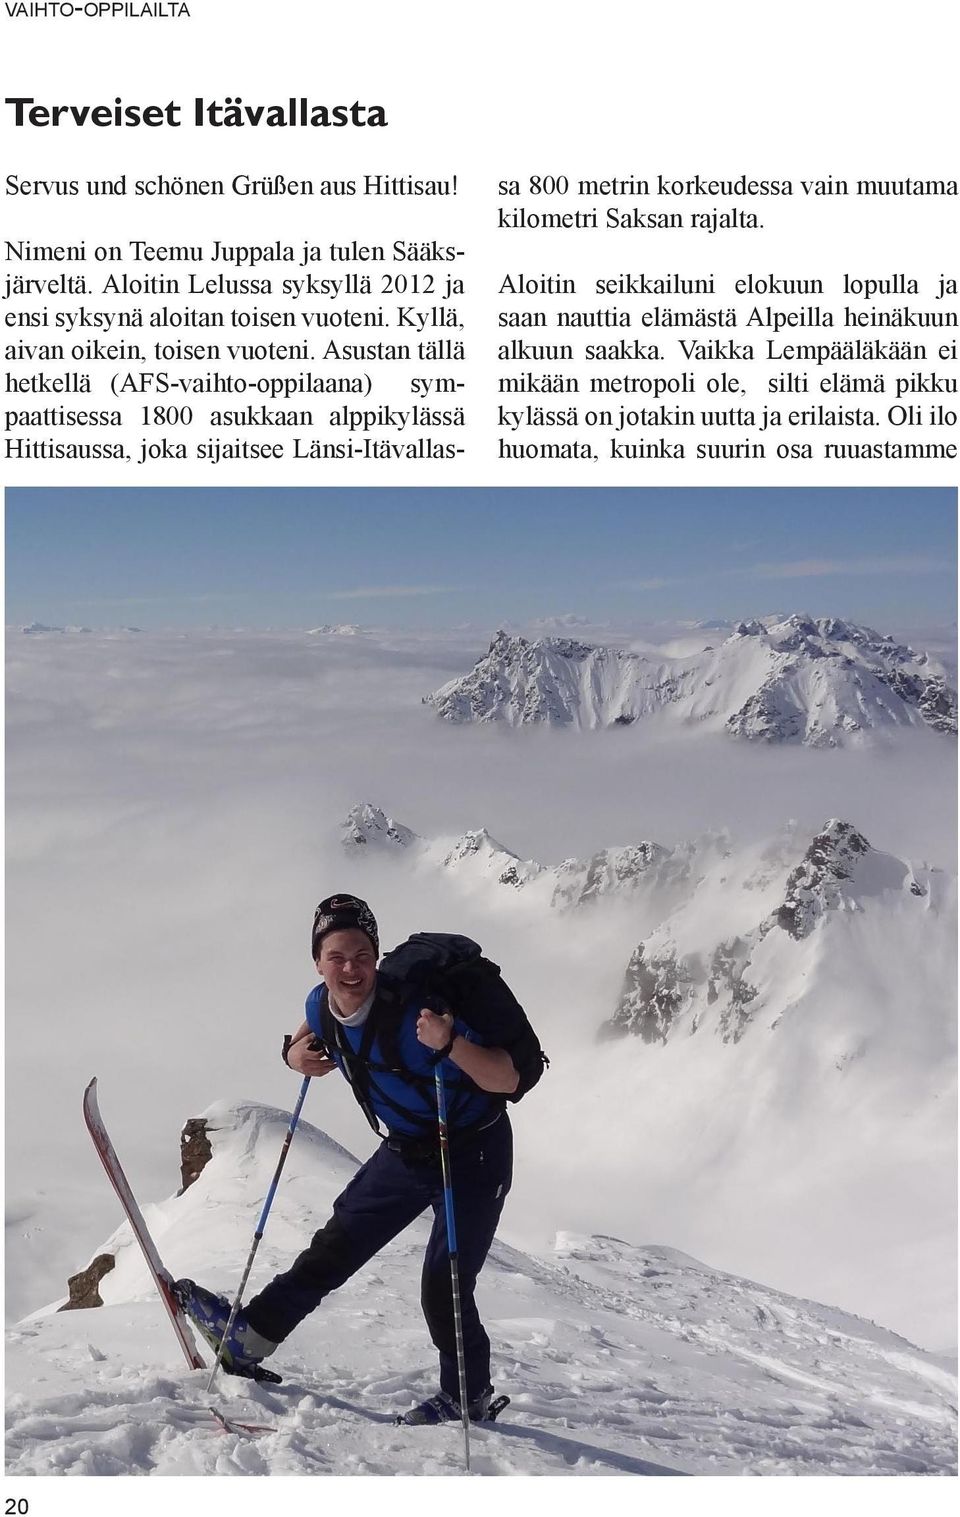 Asustan tällä hetkellä (AFS-vaihto-oppilaana) sympaattisessa 1800 asukkaan alppikylässä Hittisaussa, joka sijaitsee Länsi-Itävallassa 800 metrin korkeudessa vain